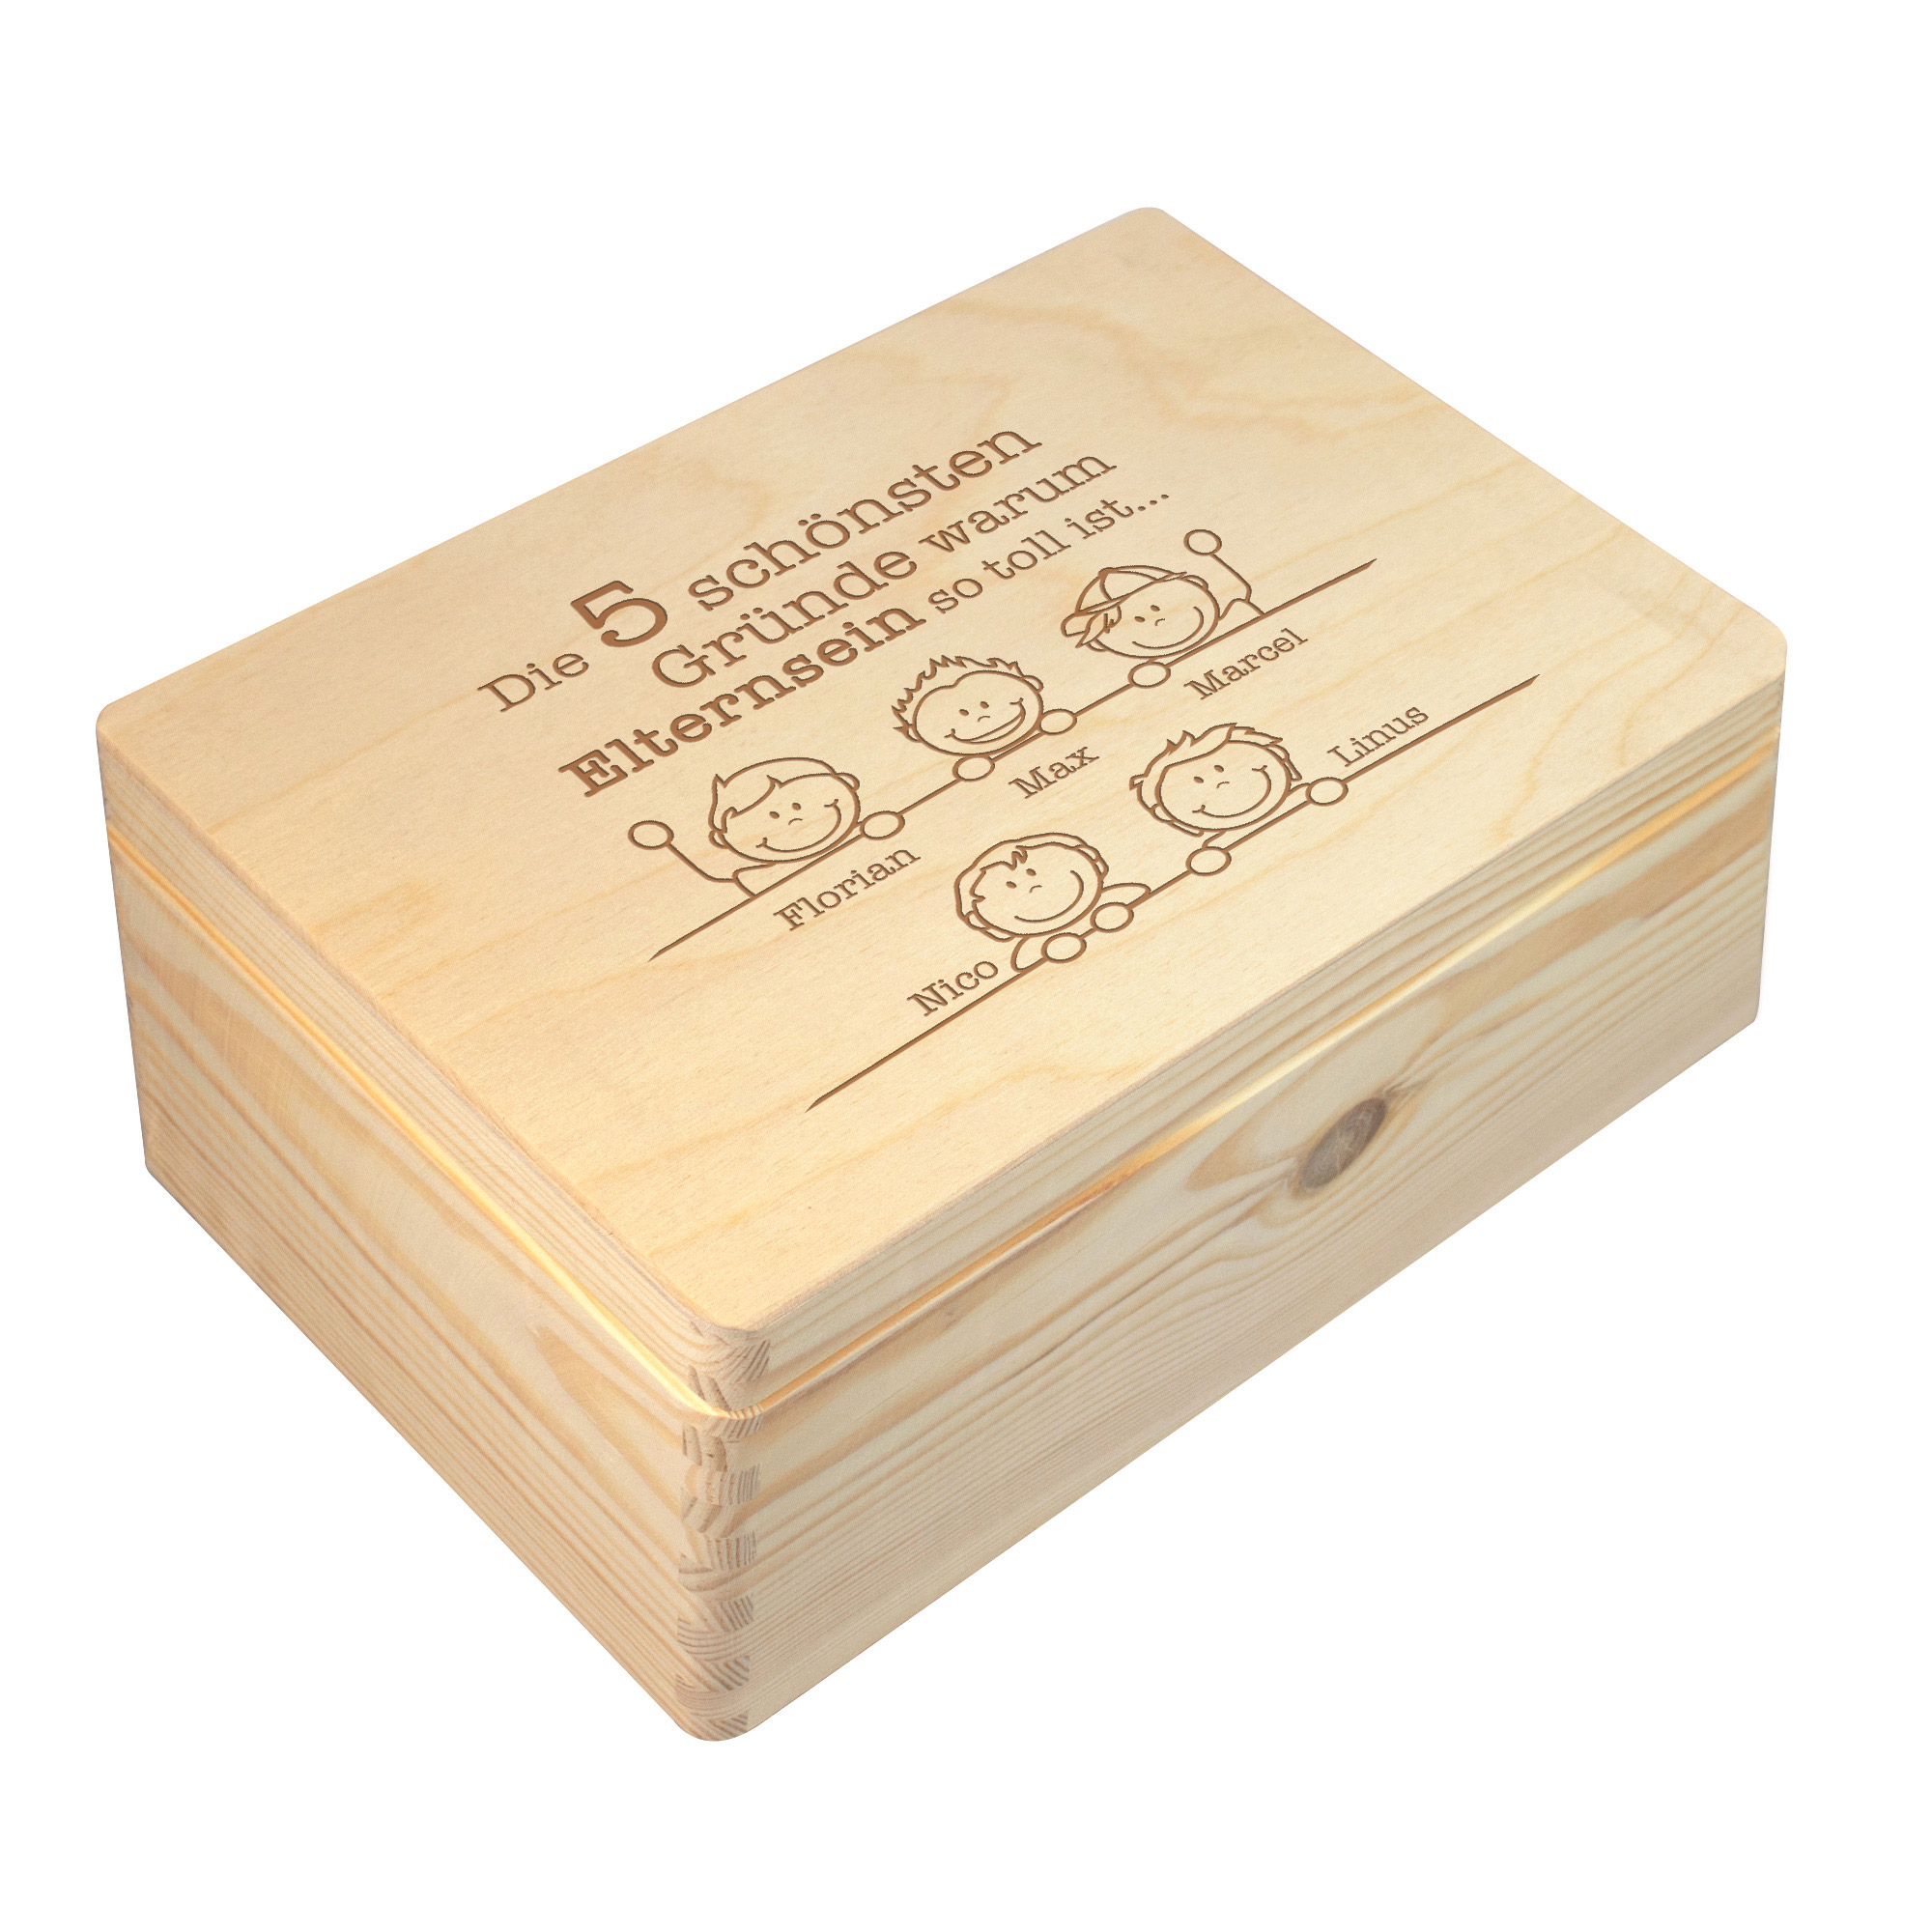 Erinnerungsbox Elternsein - Personalisierte Memory Box 1